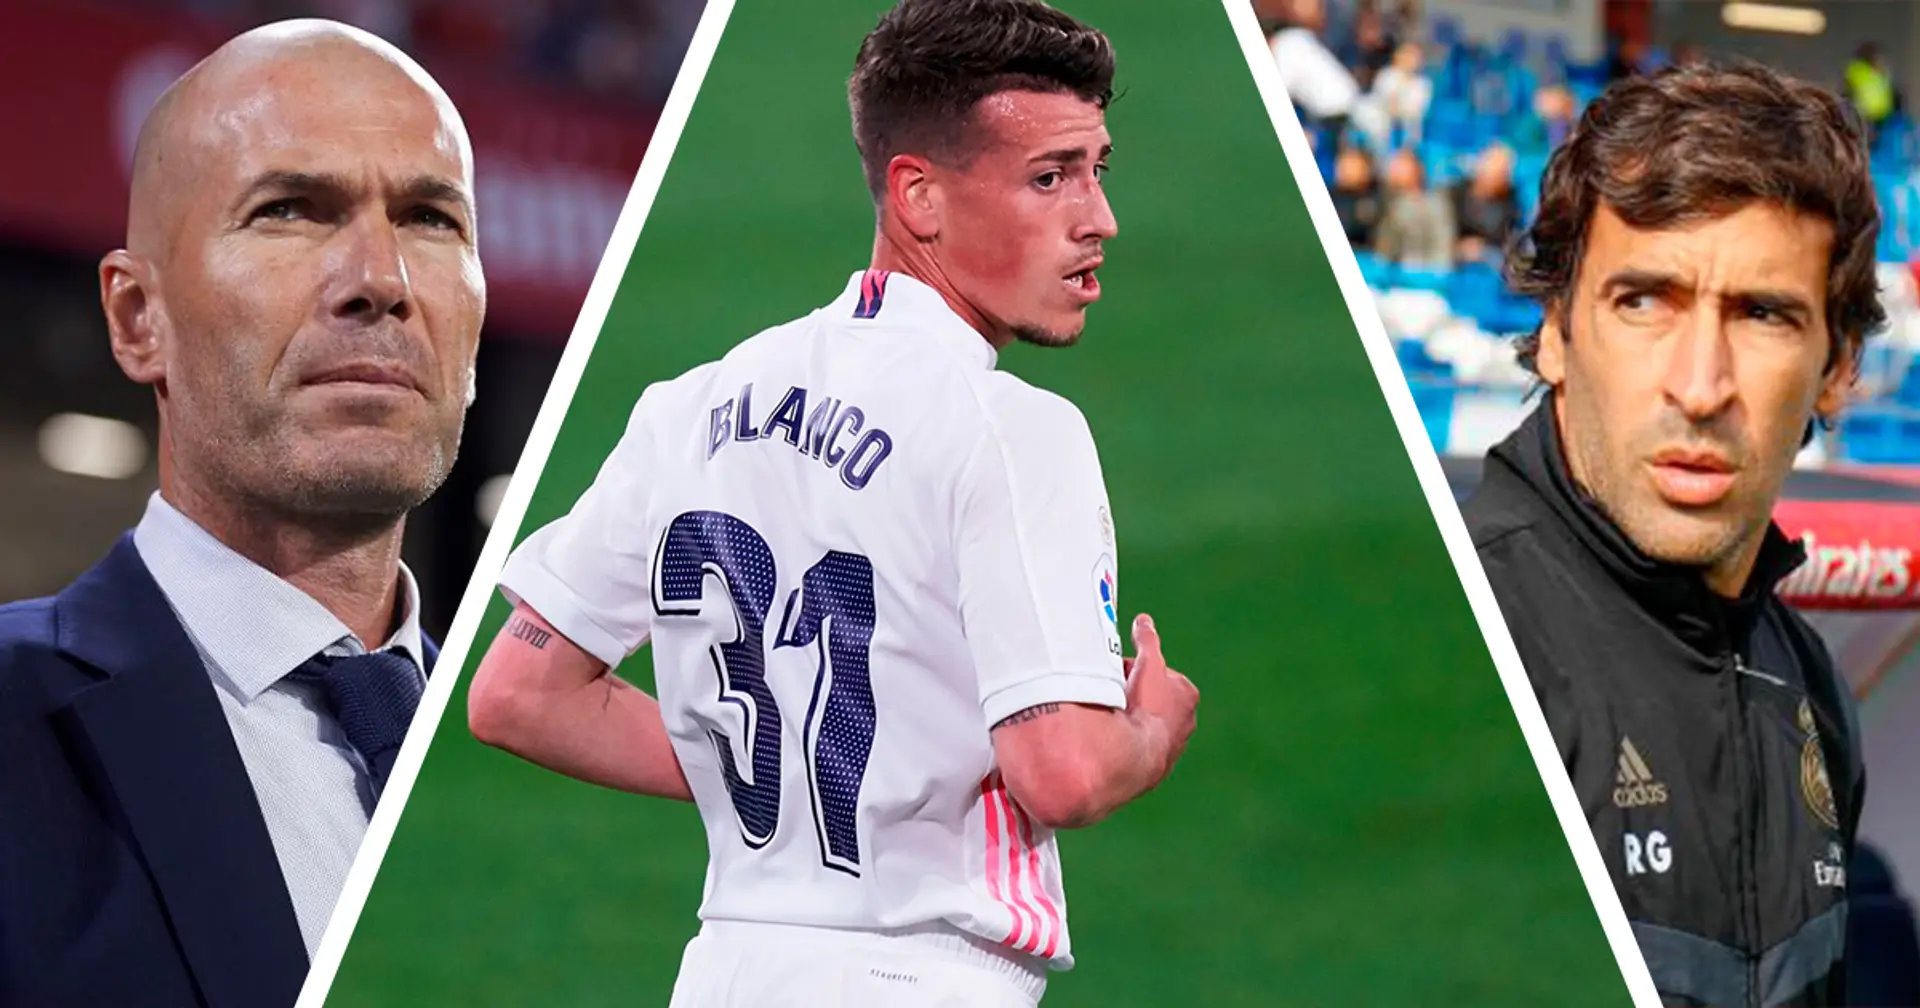 'Un sueño que pude cumplir': Blanco culpa a Raúl y Zidane de su crecimiento en el Real Madrid 